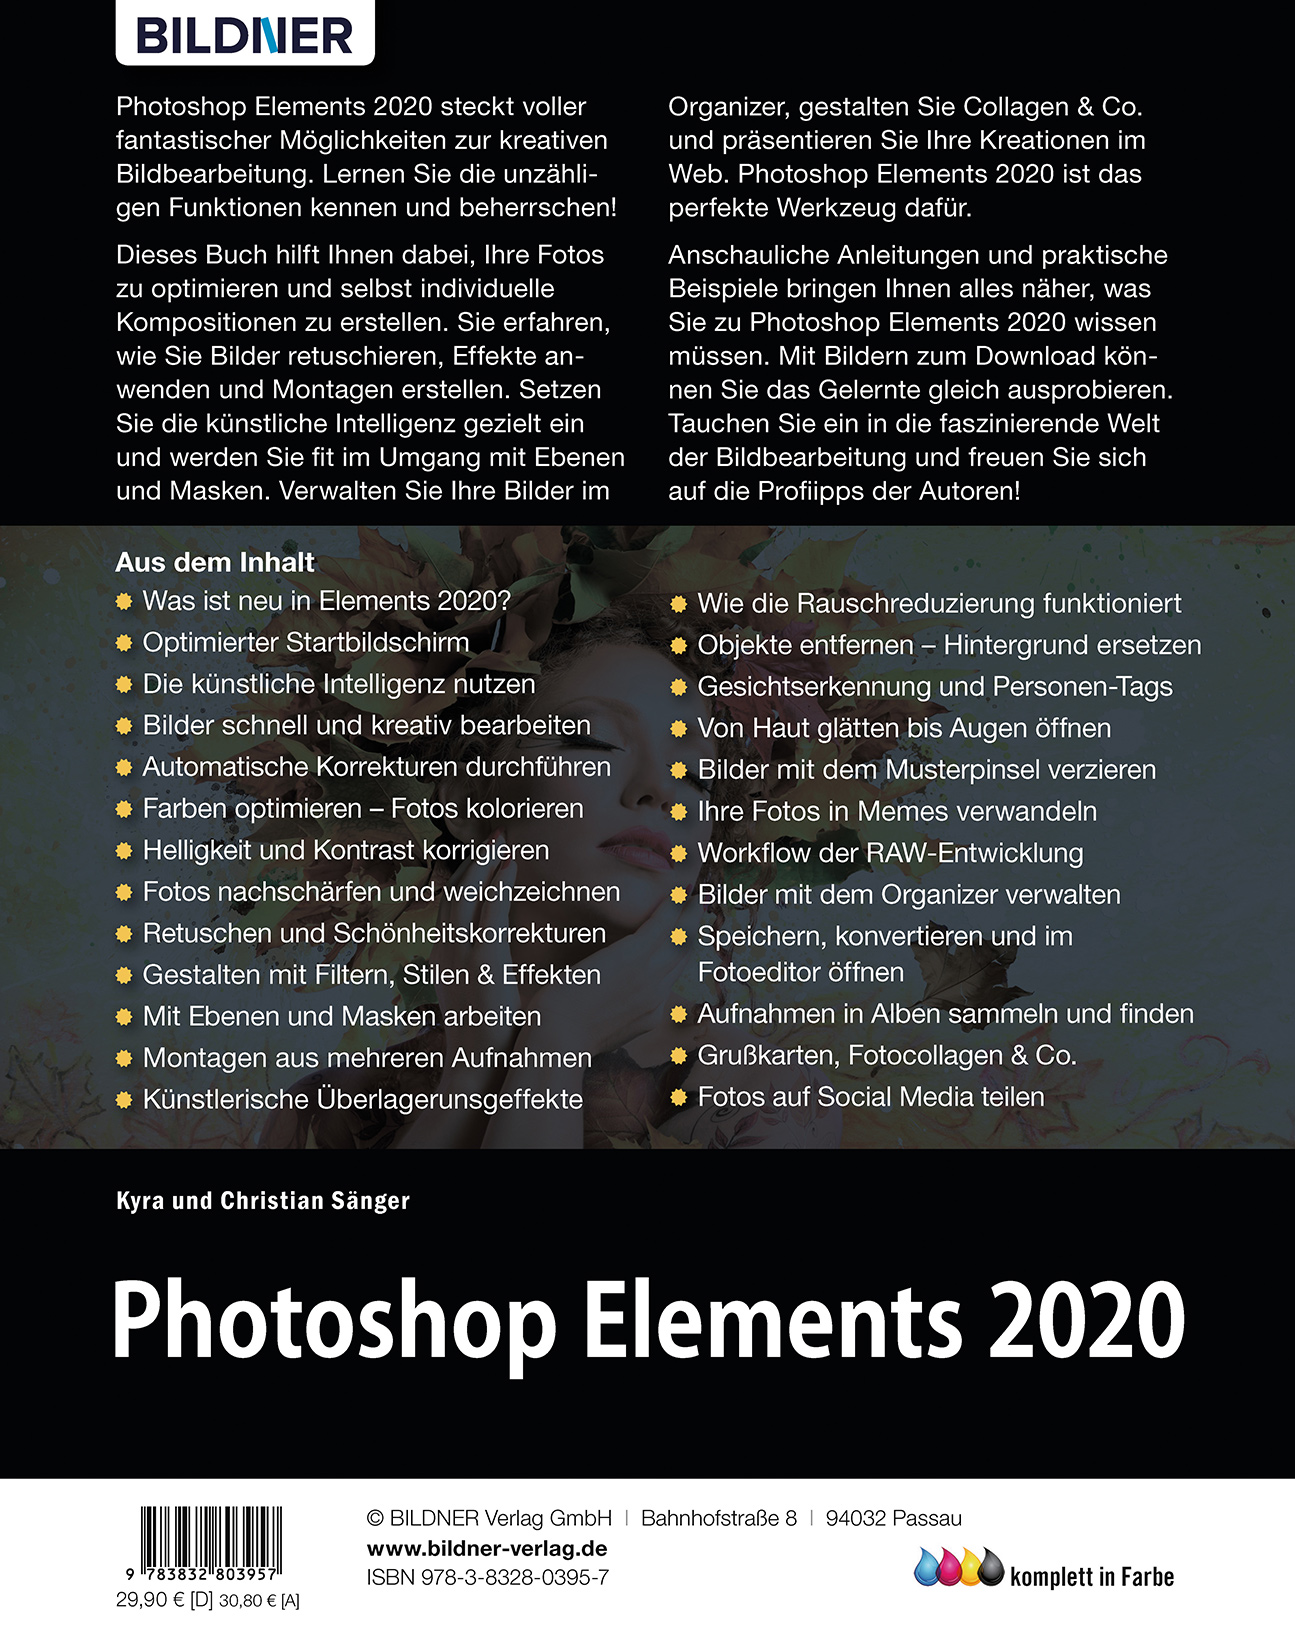 using photoshop elements 2020